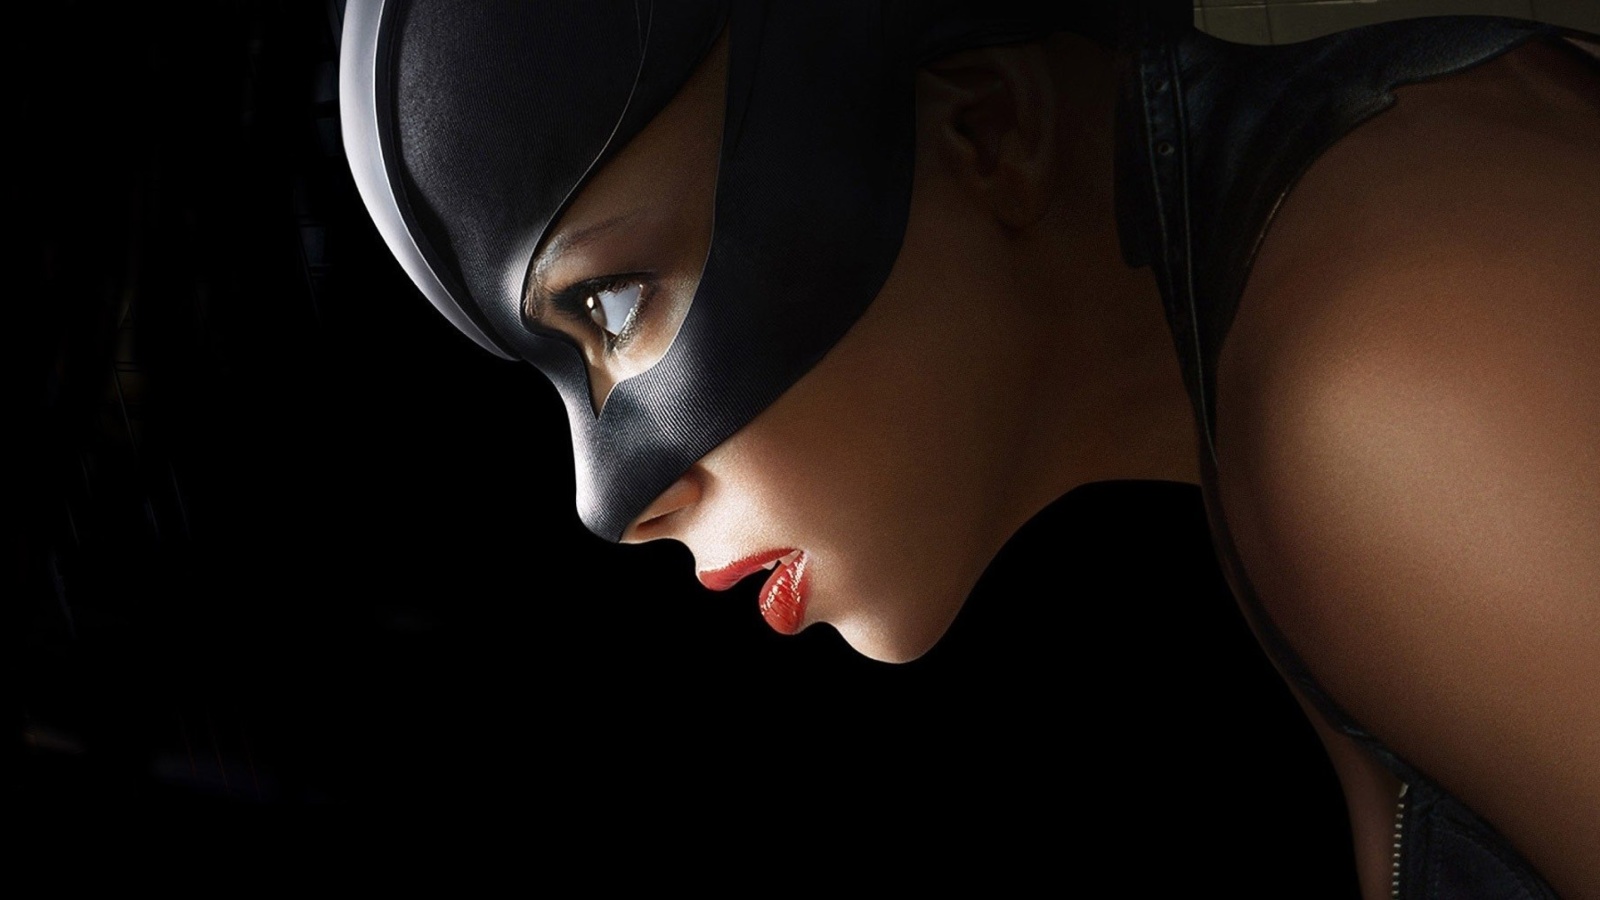 Catwoman DC Comics wallpaper 1600x900